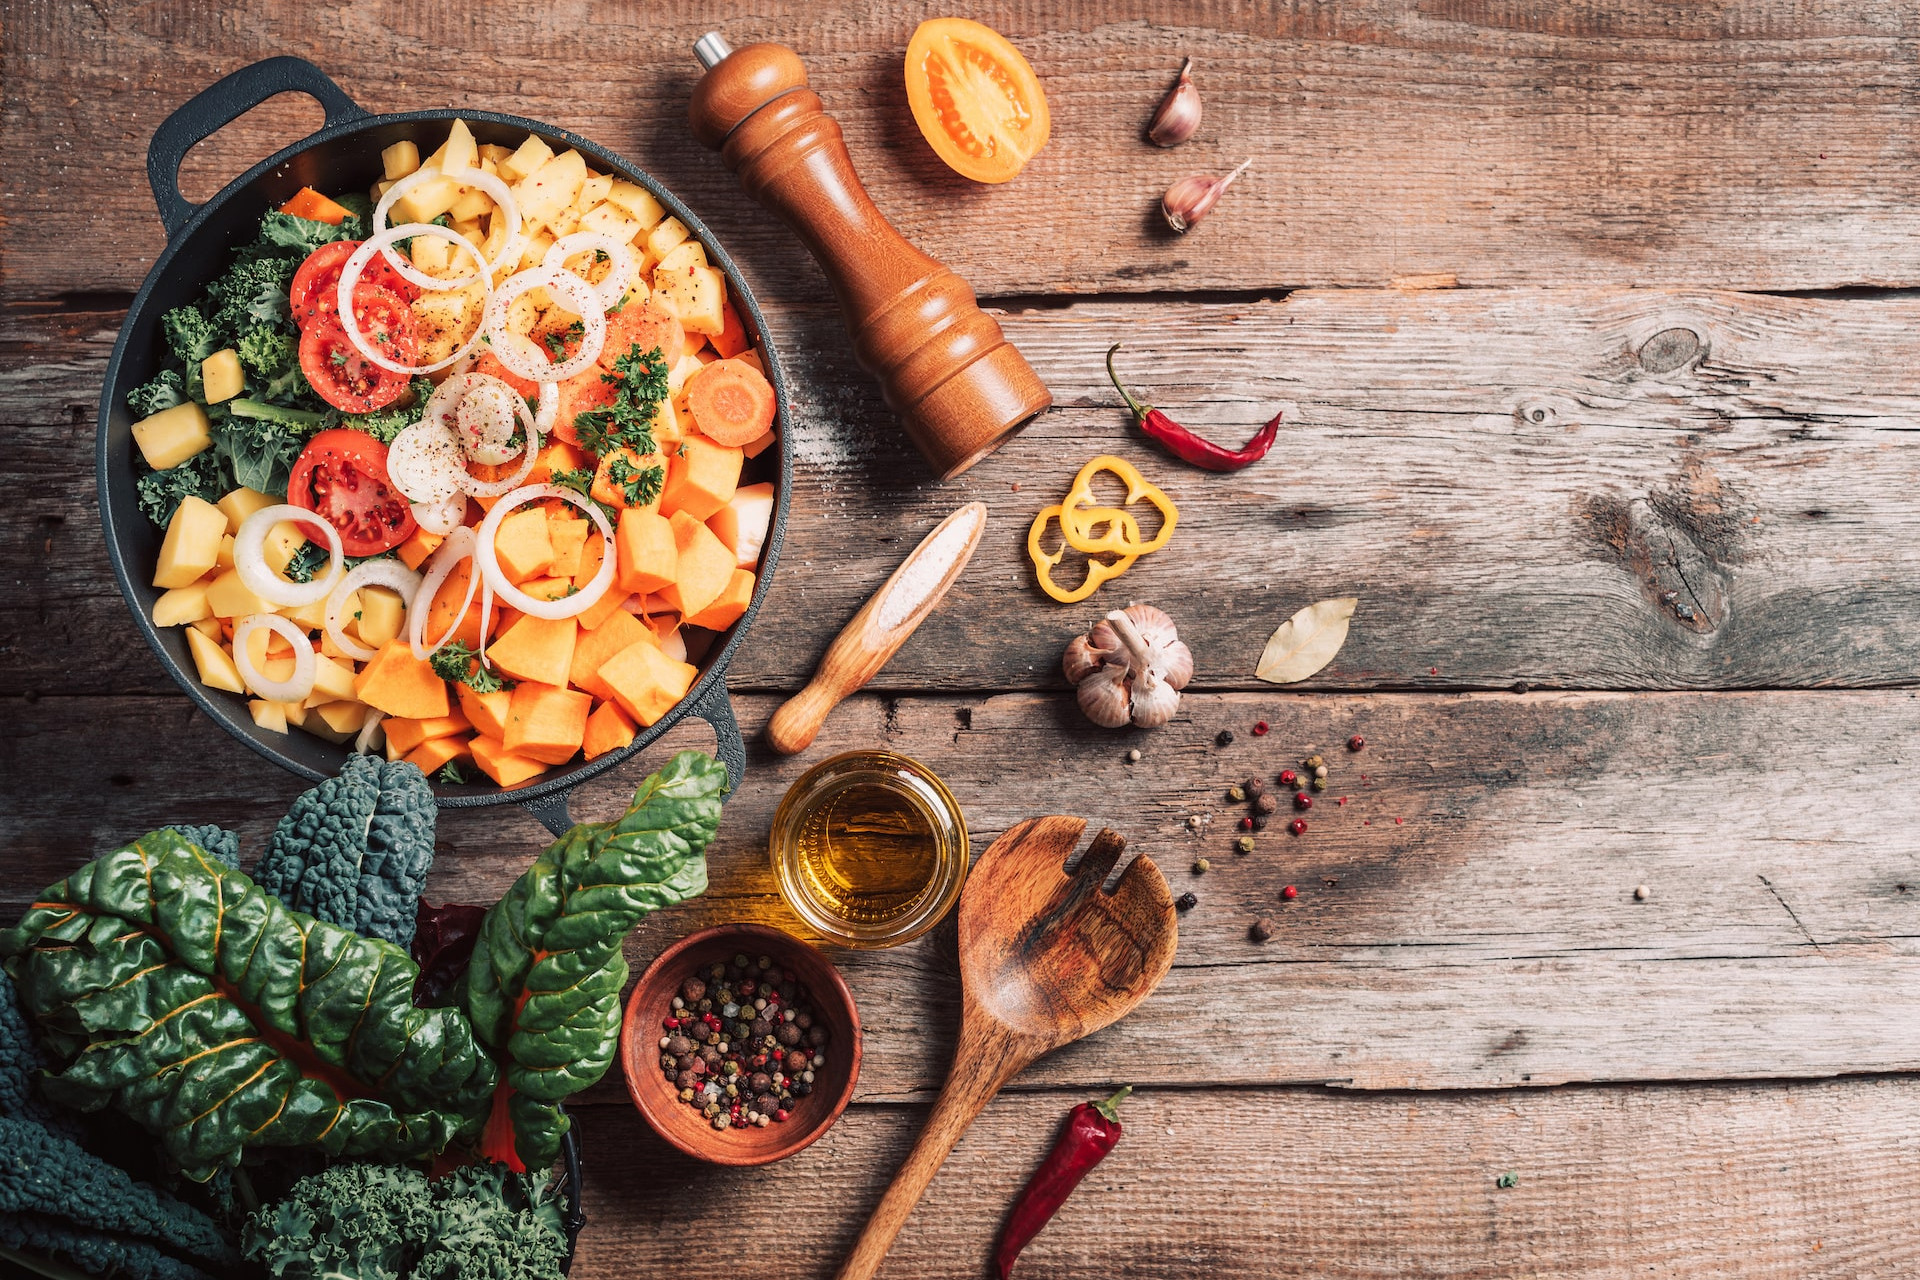 Jesienna dieta. Jakie produkty najlepiej spożywać jesienią?